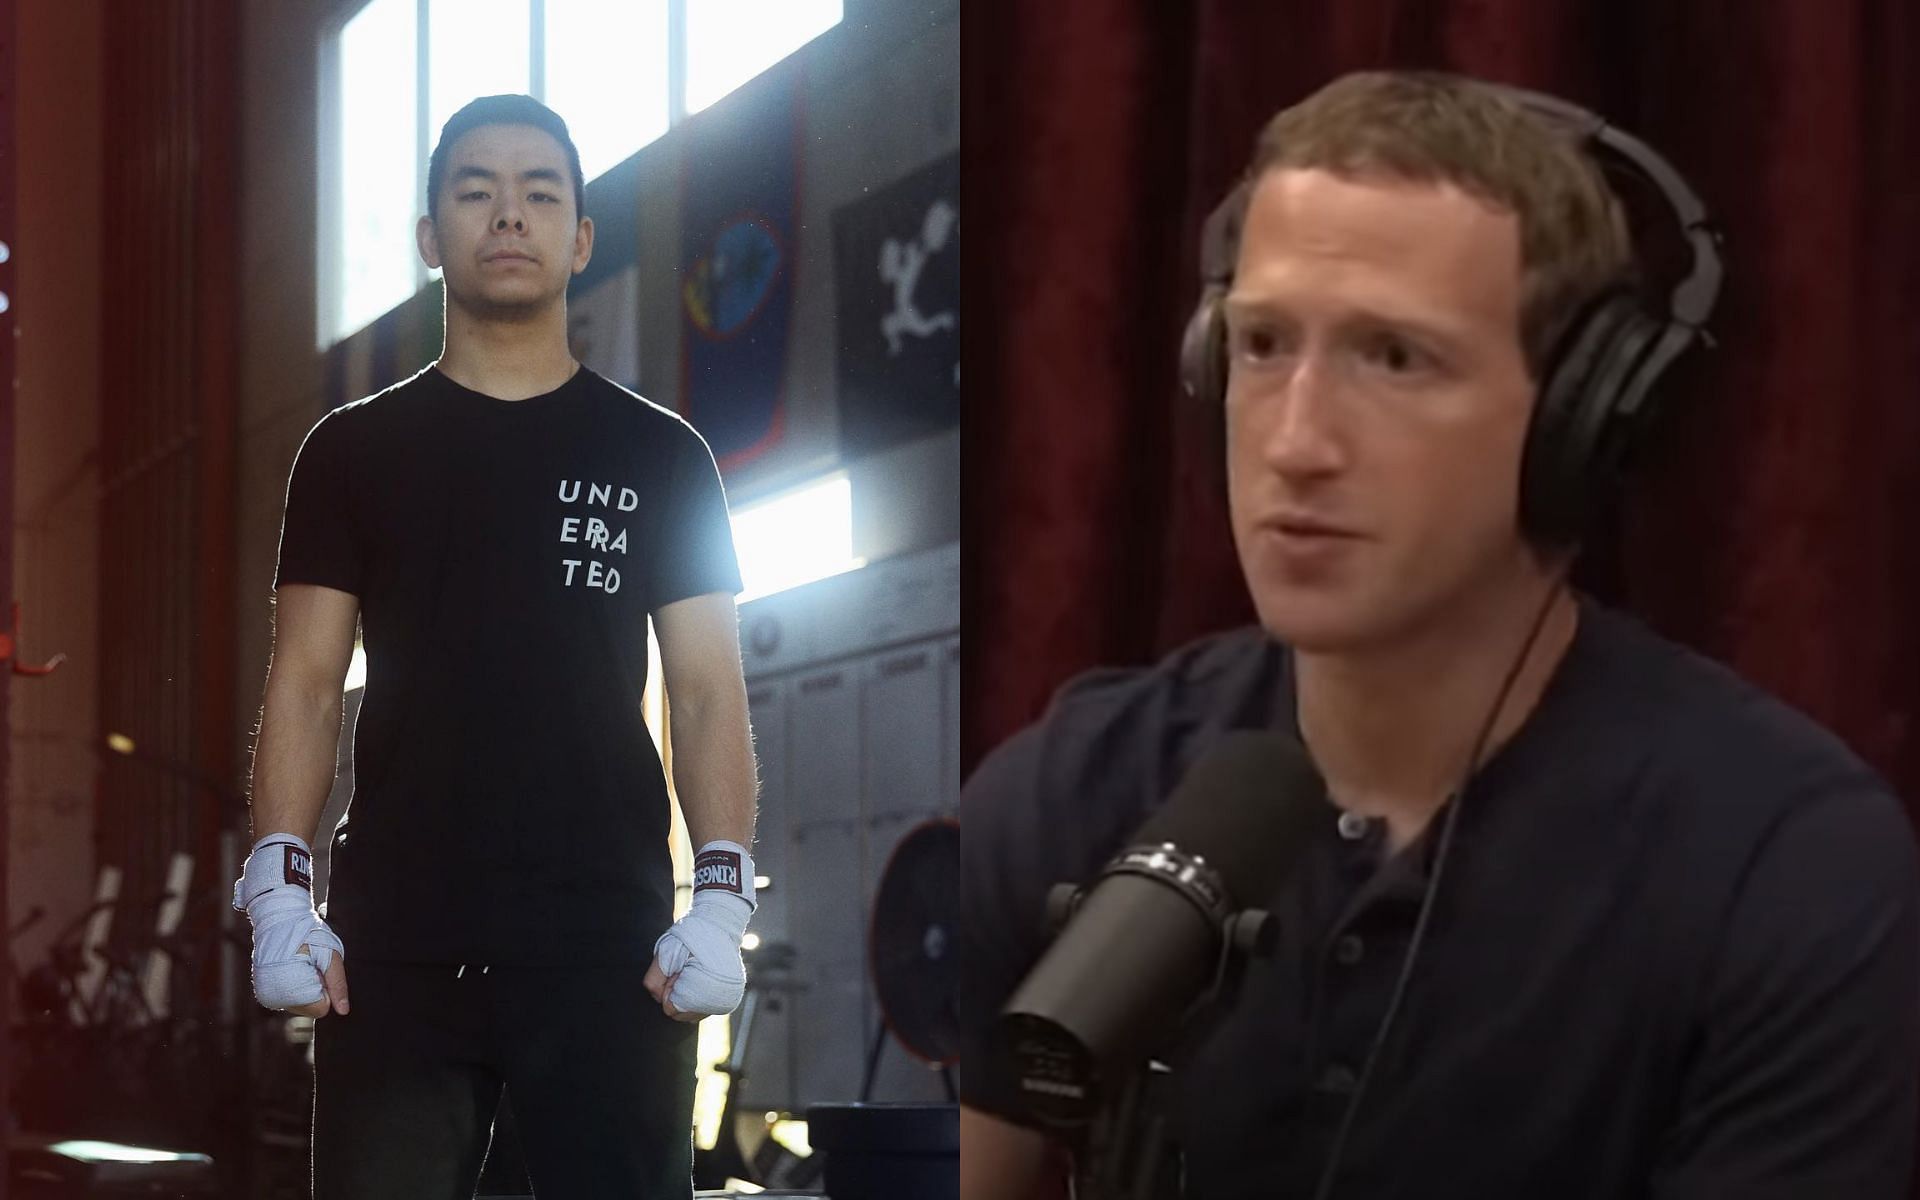 Khai Wu (left, image courtesy of @khaiwu Instagram); Mark Zuckerberg (right, image courtesy of Powerful JRE YouTube channel)